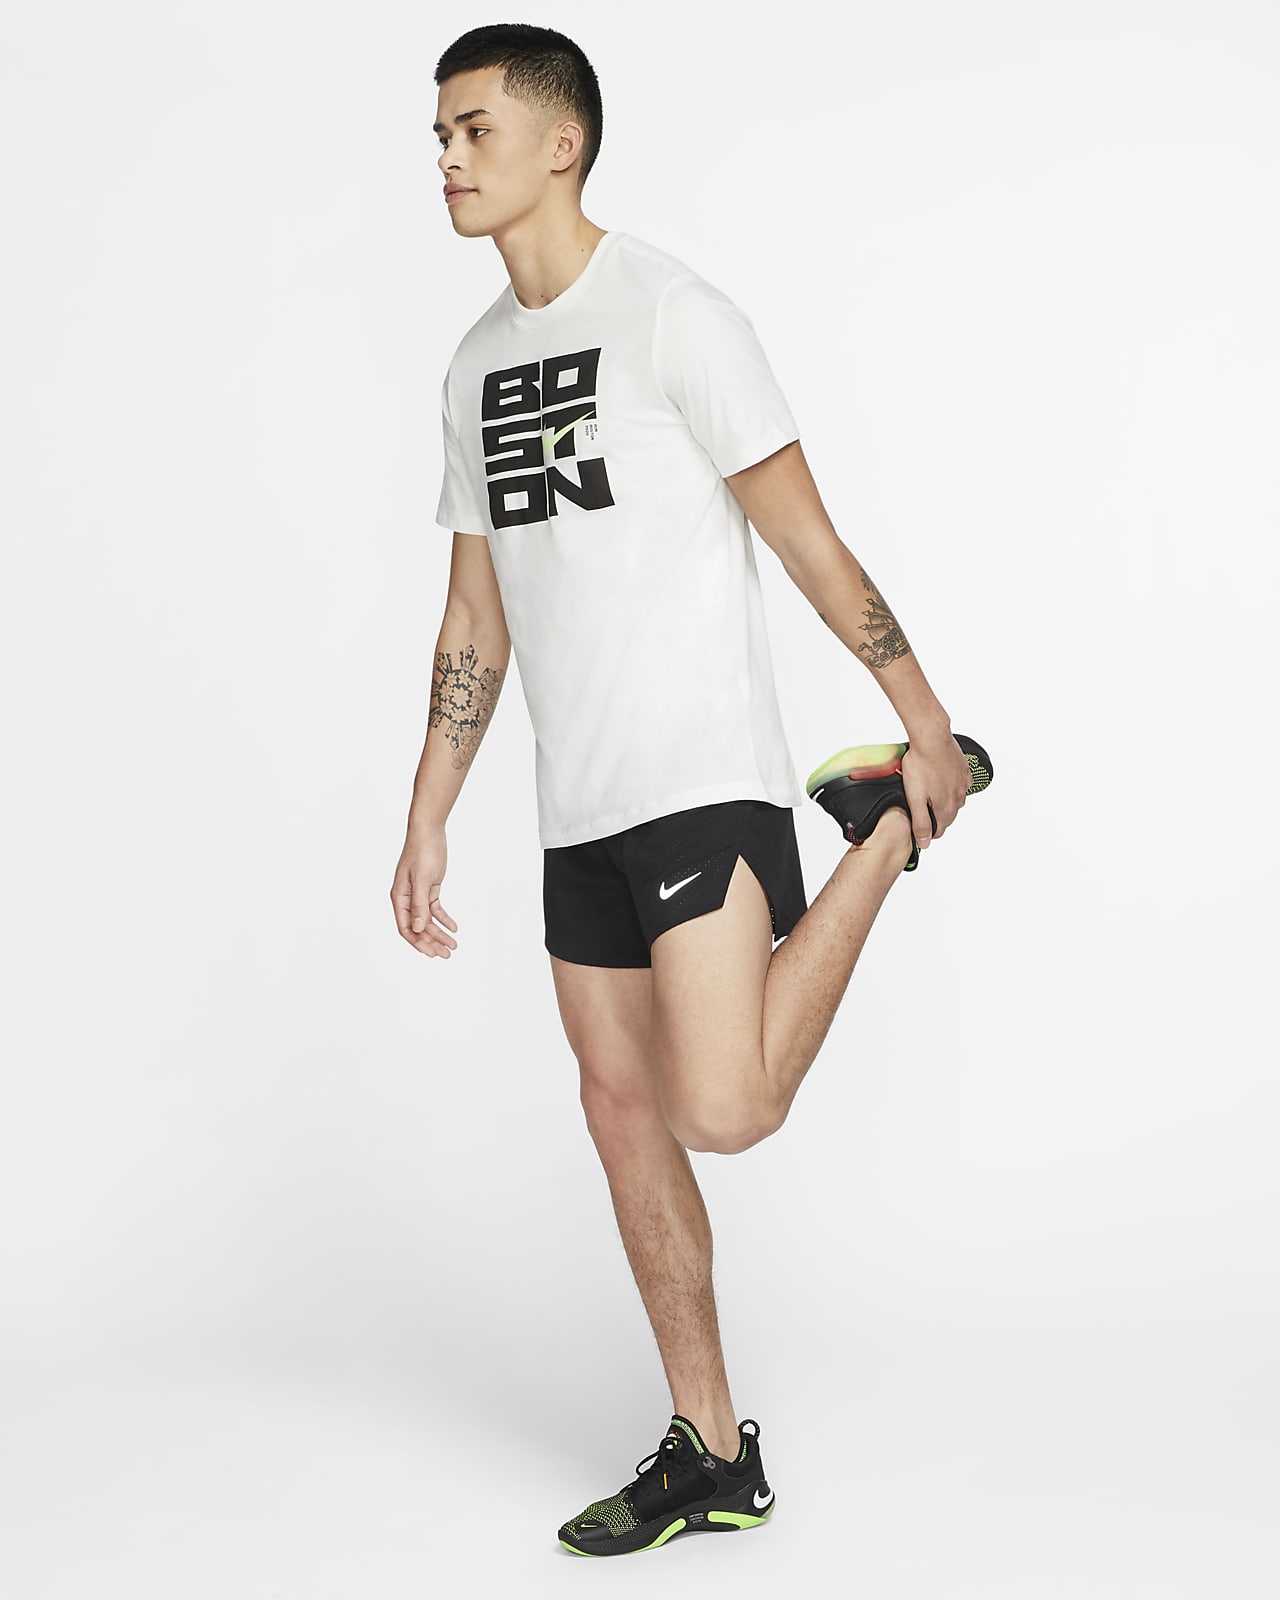 Fast corto de de 10 cm con forro - Nike ES